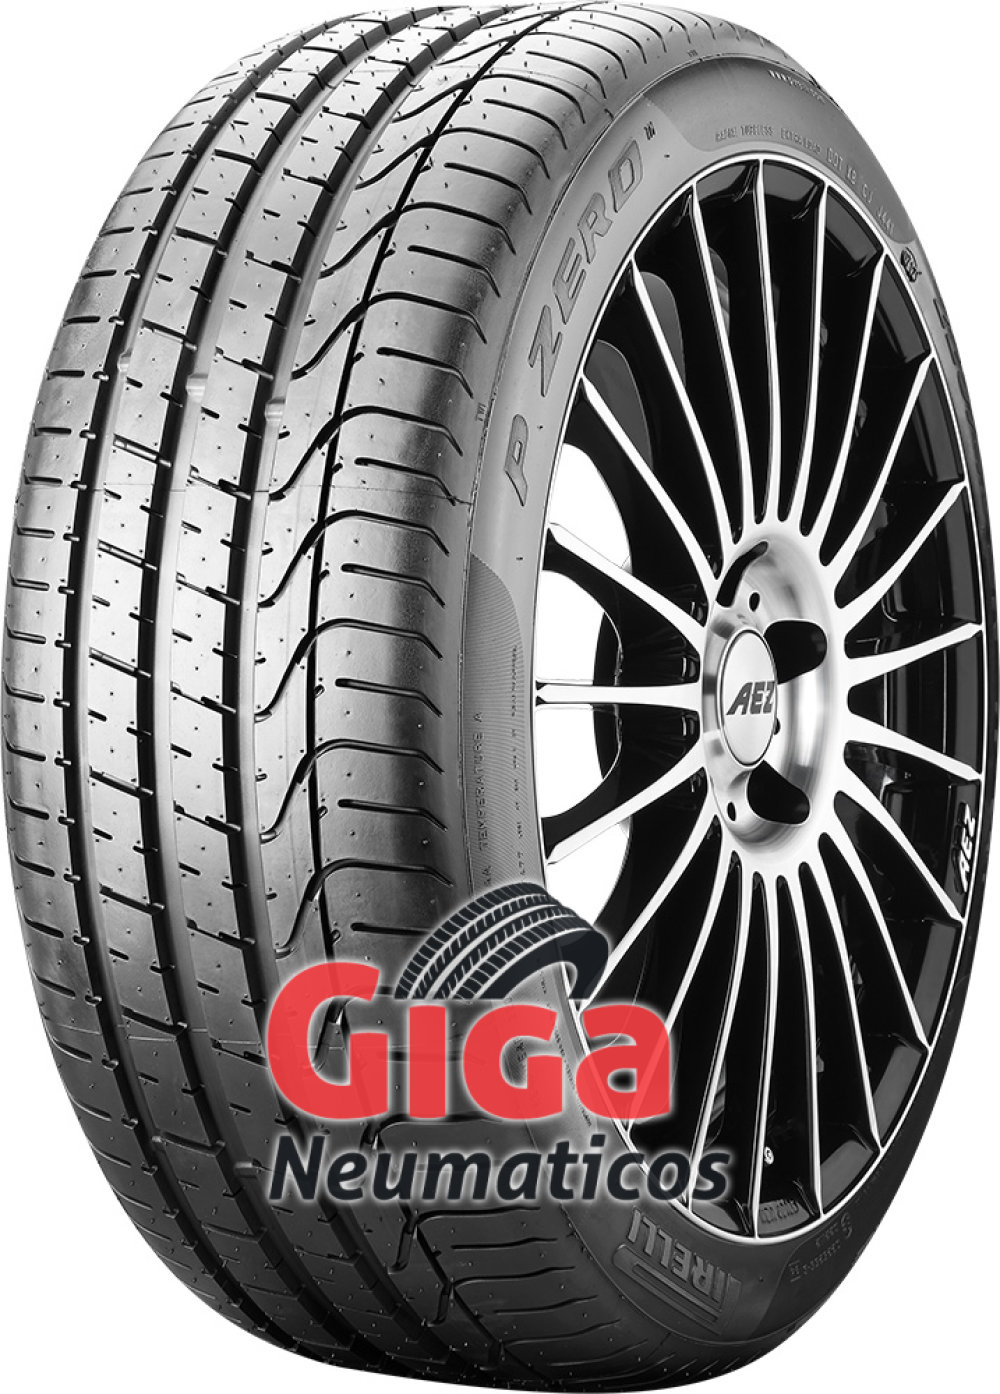 nosotros ANTES DE CRISTO. Contable Comprar neumáticos Pirelli P Zero 275/30 R19 96Y a precios económicos -  giga-neumaticos.es